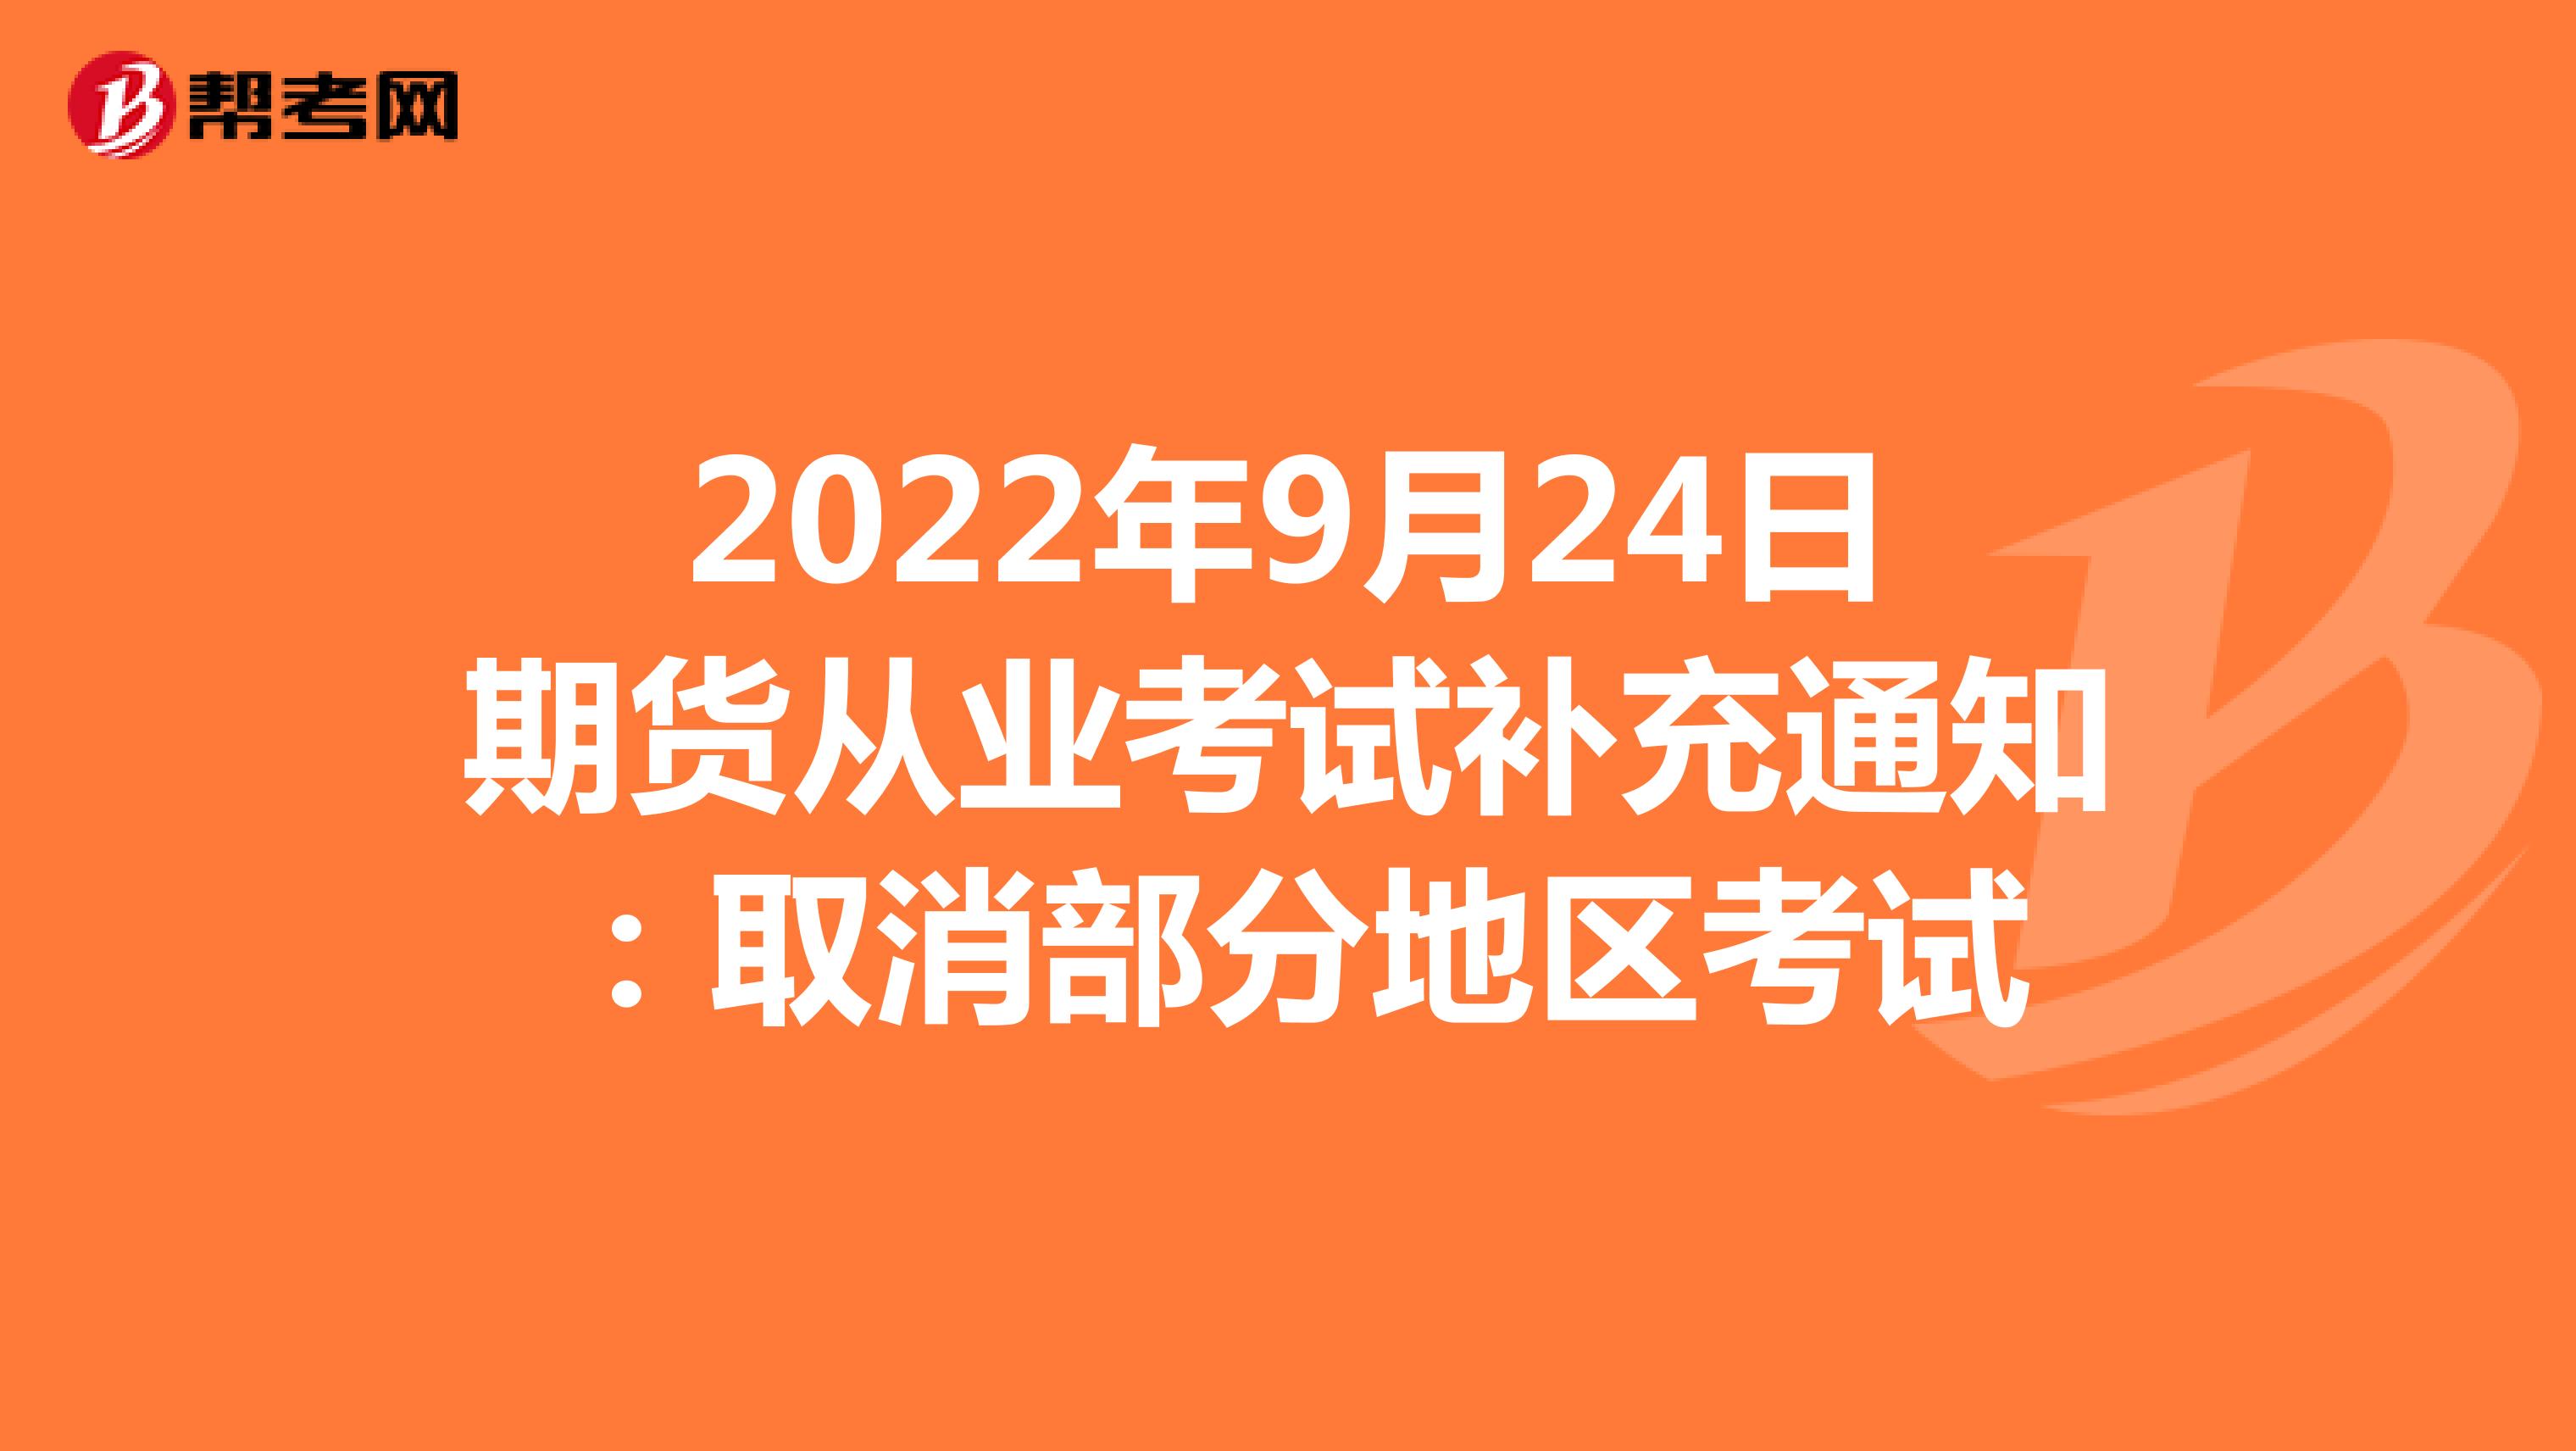 2022年9月24日期货从业考试补充通知：取消部分地区考试